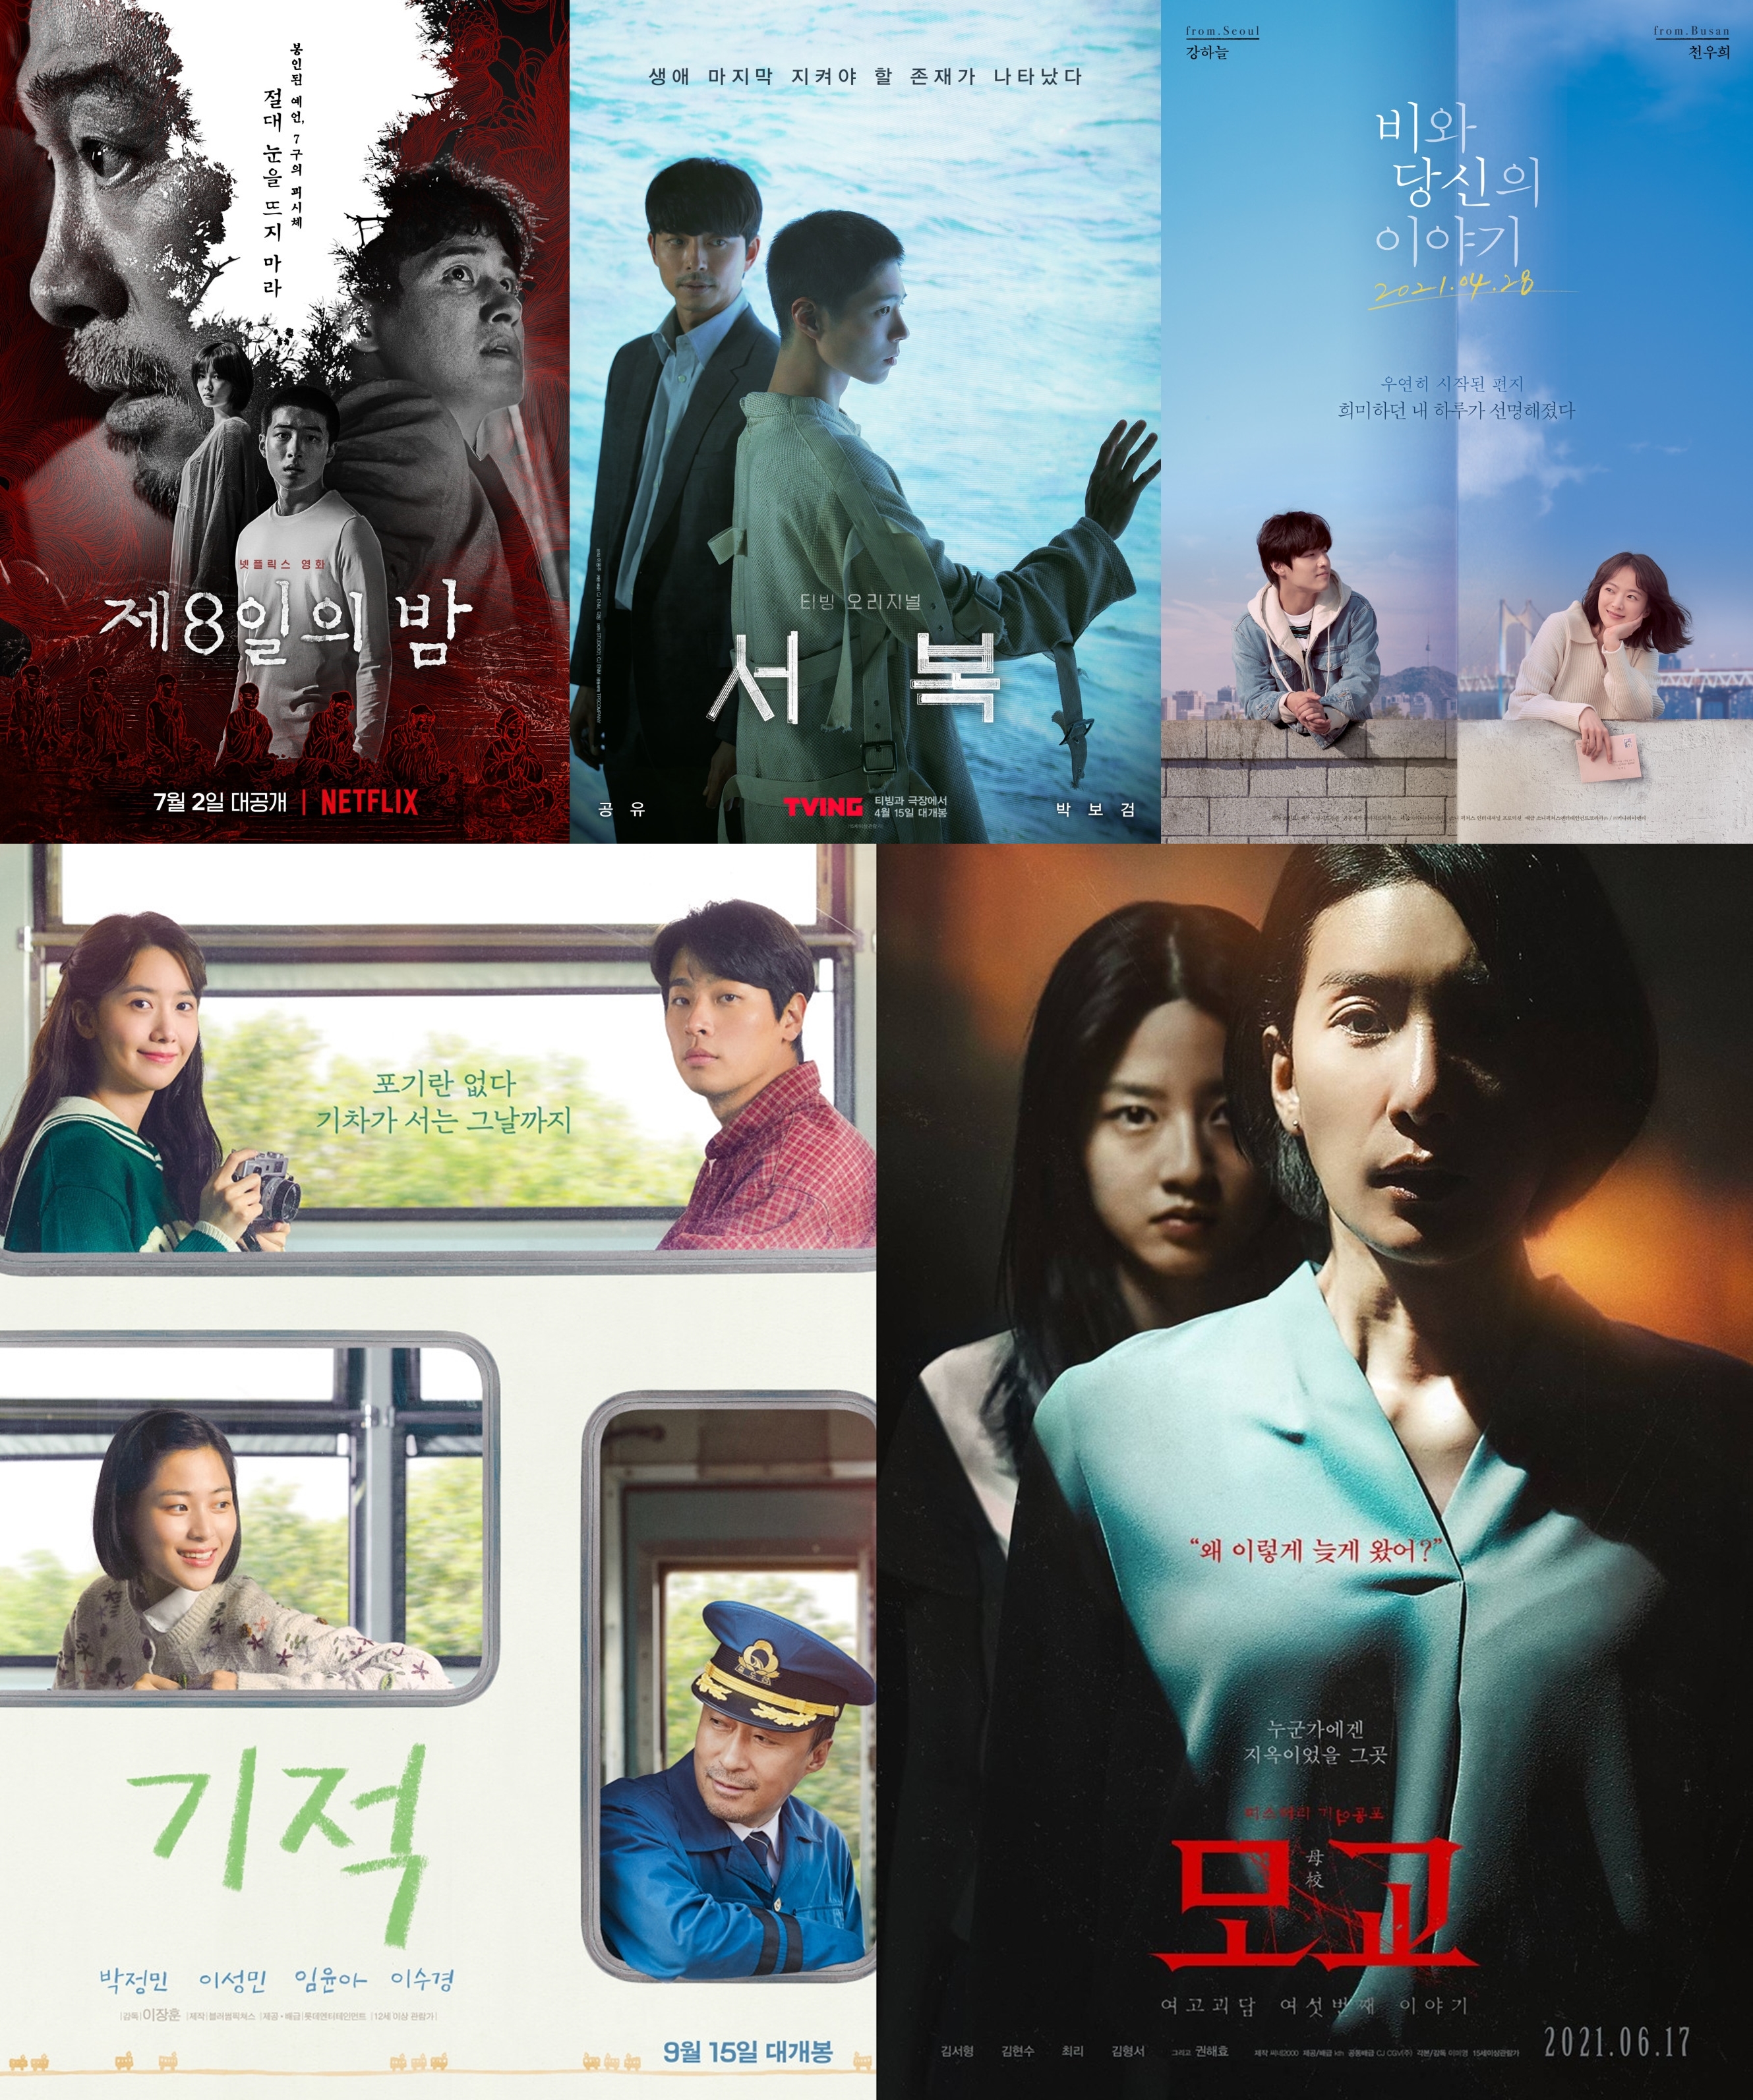 [Y랭킹] “흥행 실패는 코로나19 탓이 아니다” 올해의 韓영화 워스트 5